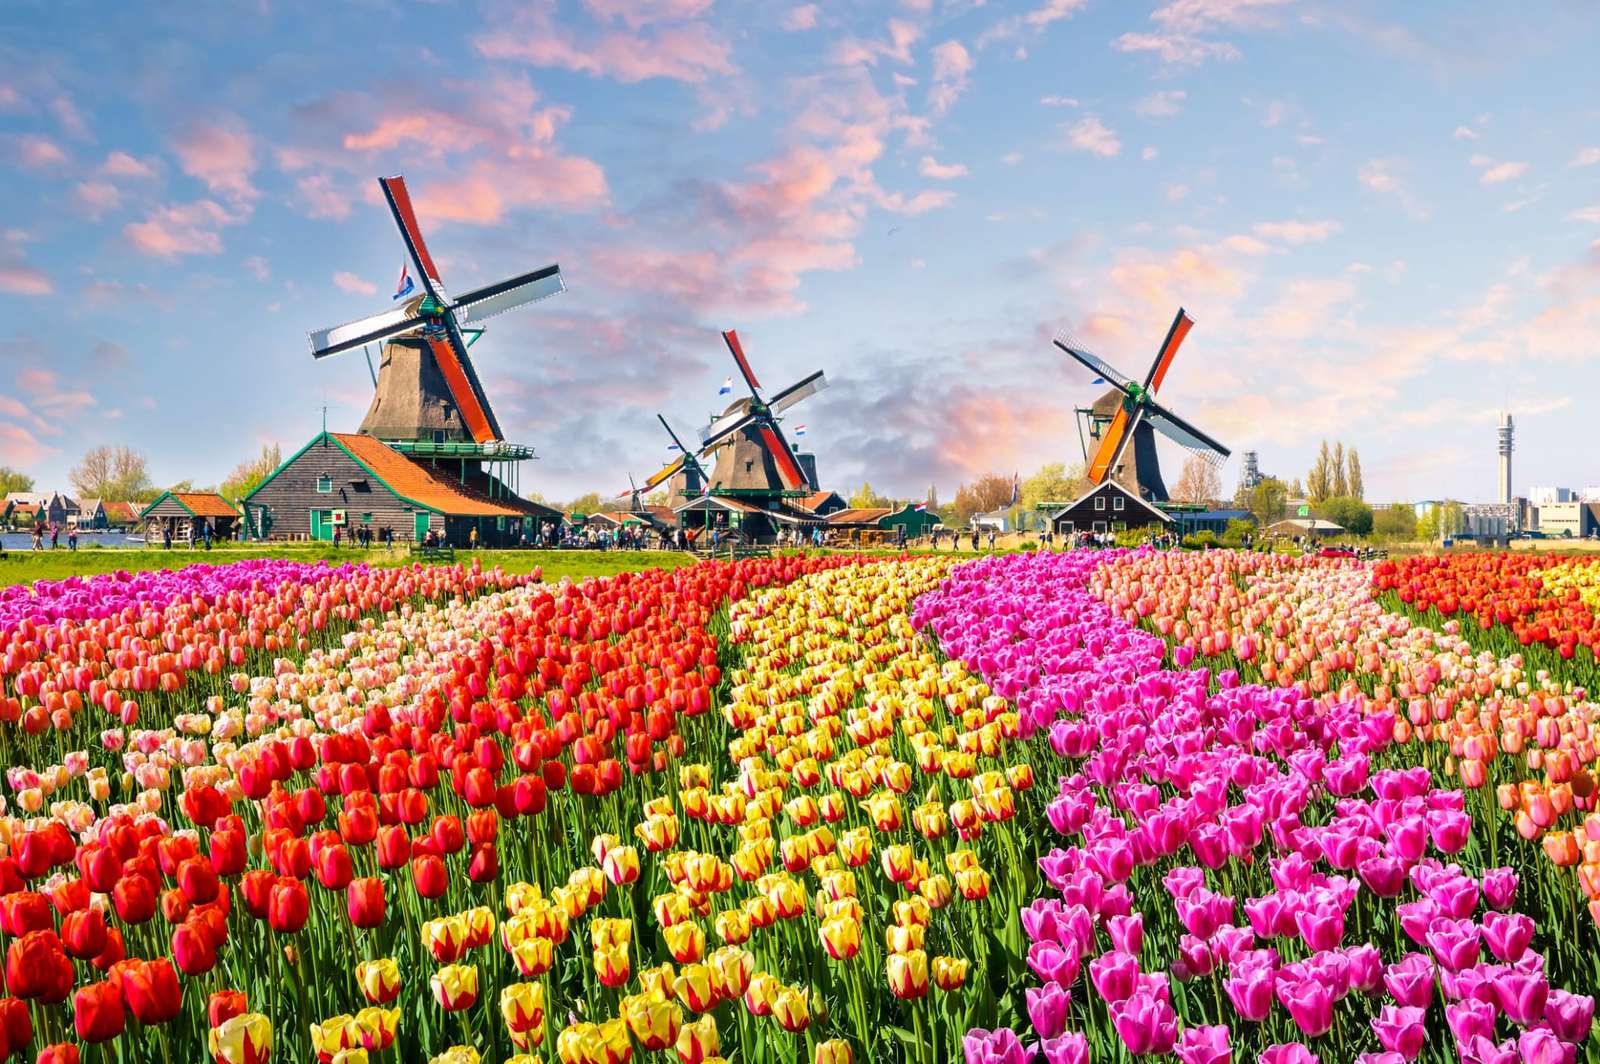 Fábricas de tulipas puzzle online a partir de fotografia